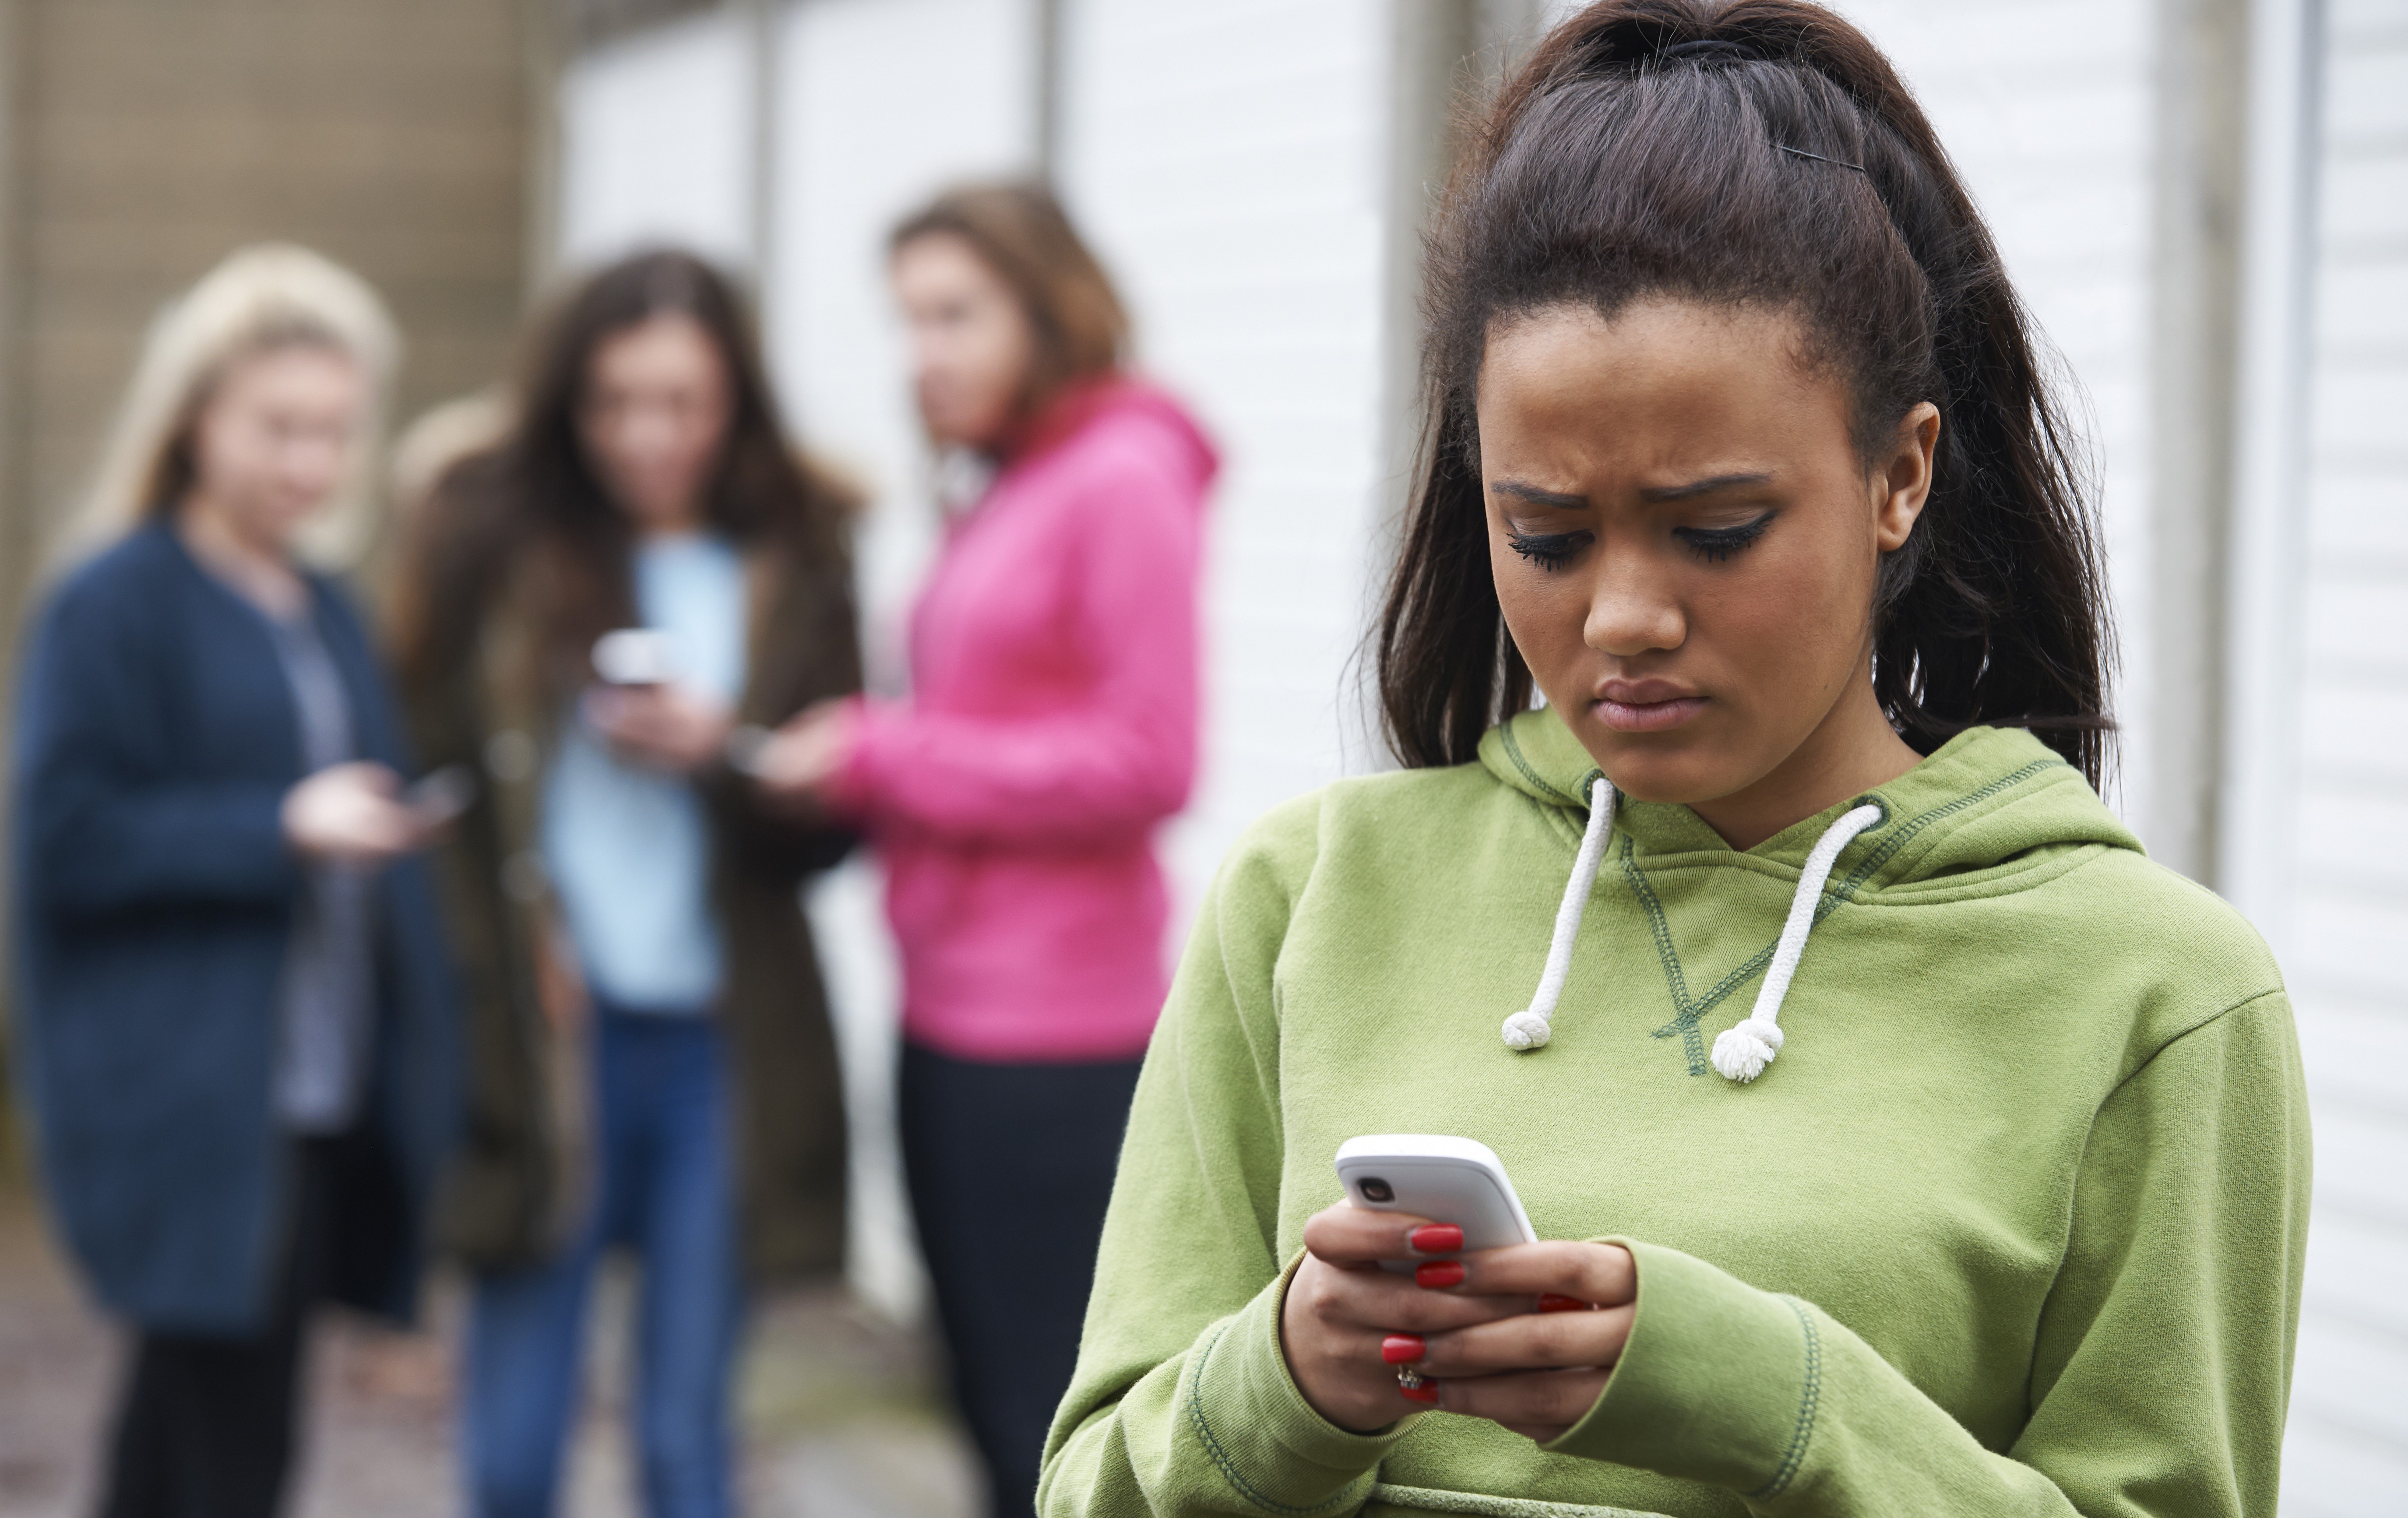 Meisje in groene trui kijkt bang naar haar smartphone terwijl andere meisjes in de achtergrond lachen